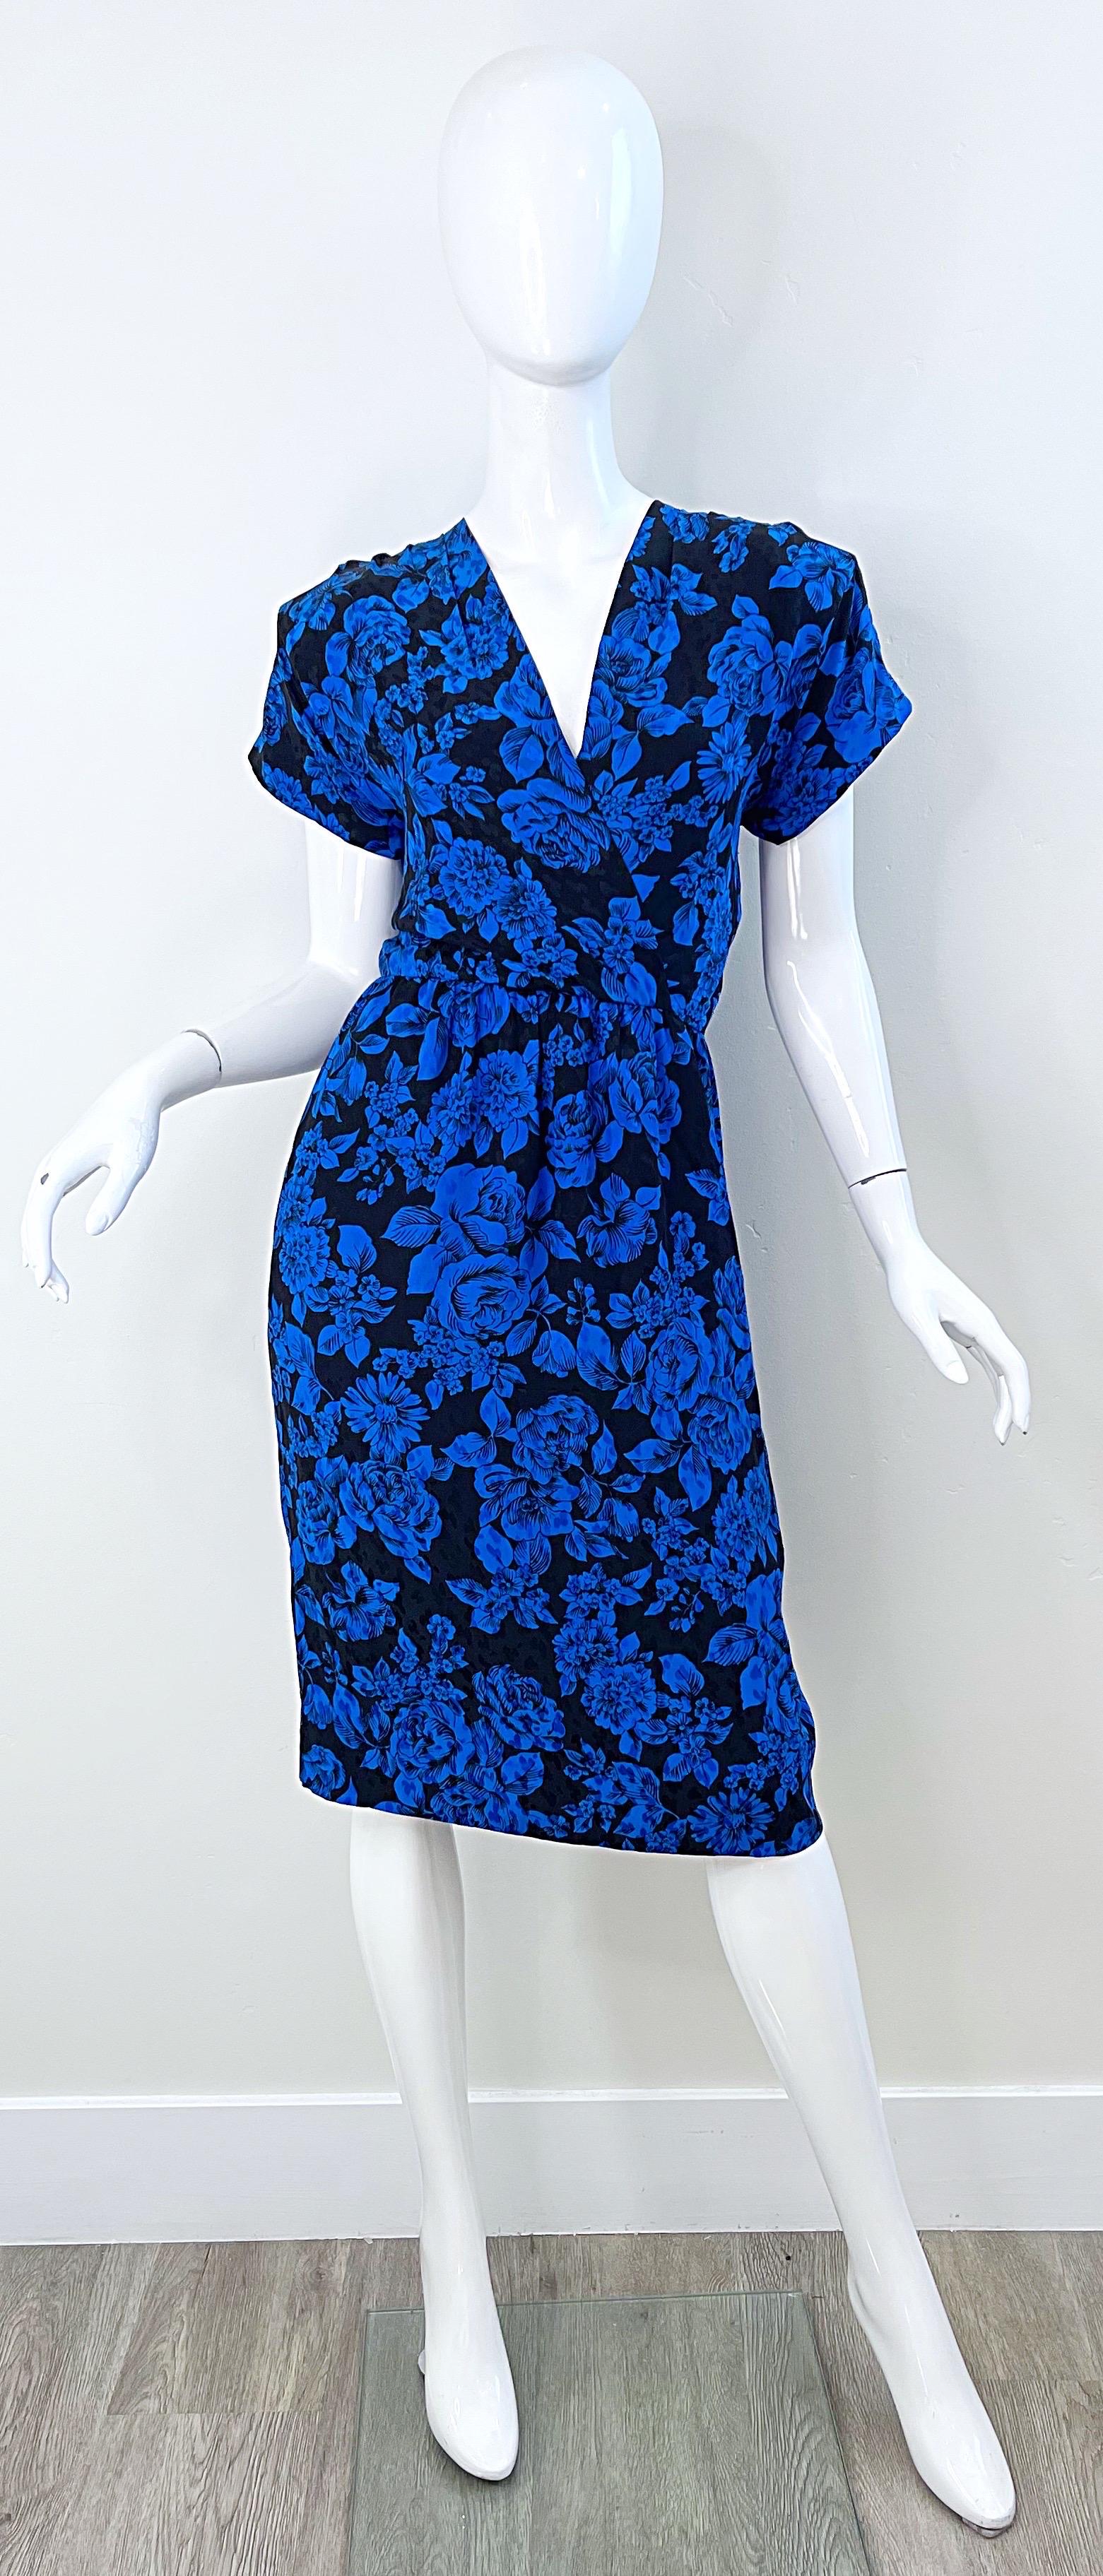 Superbe robe à manches courtes en soie YVES SAINT LAURENT YSL Rive Gauche bleue et noire à imprimé floral / rose des années 1980 ! Poches de chaque côté de la taille. Il est orné de fleurs et de roses d'un bleu éclatant. Fermeture à glissière en